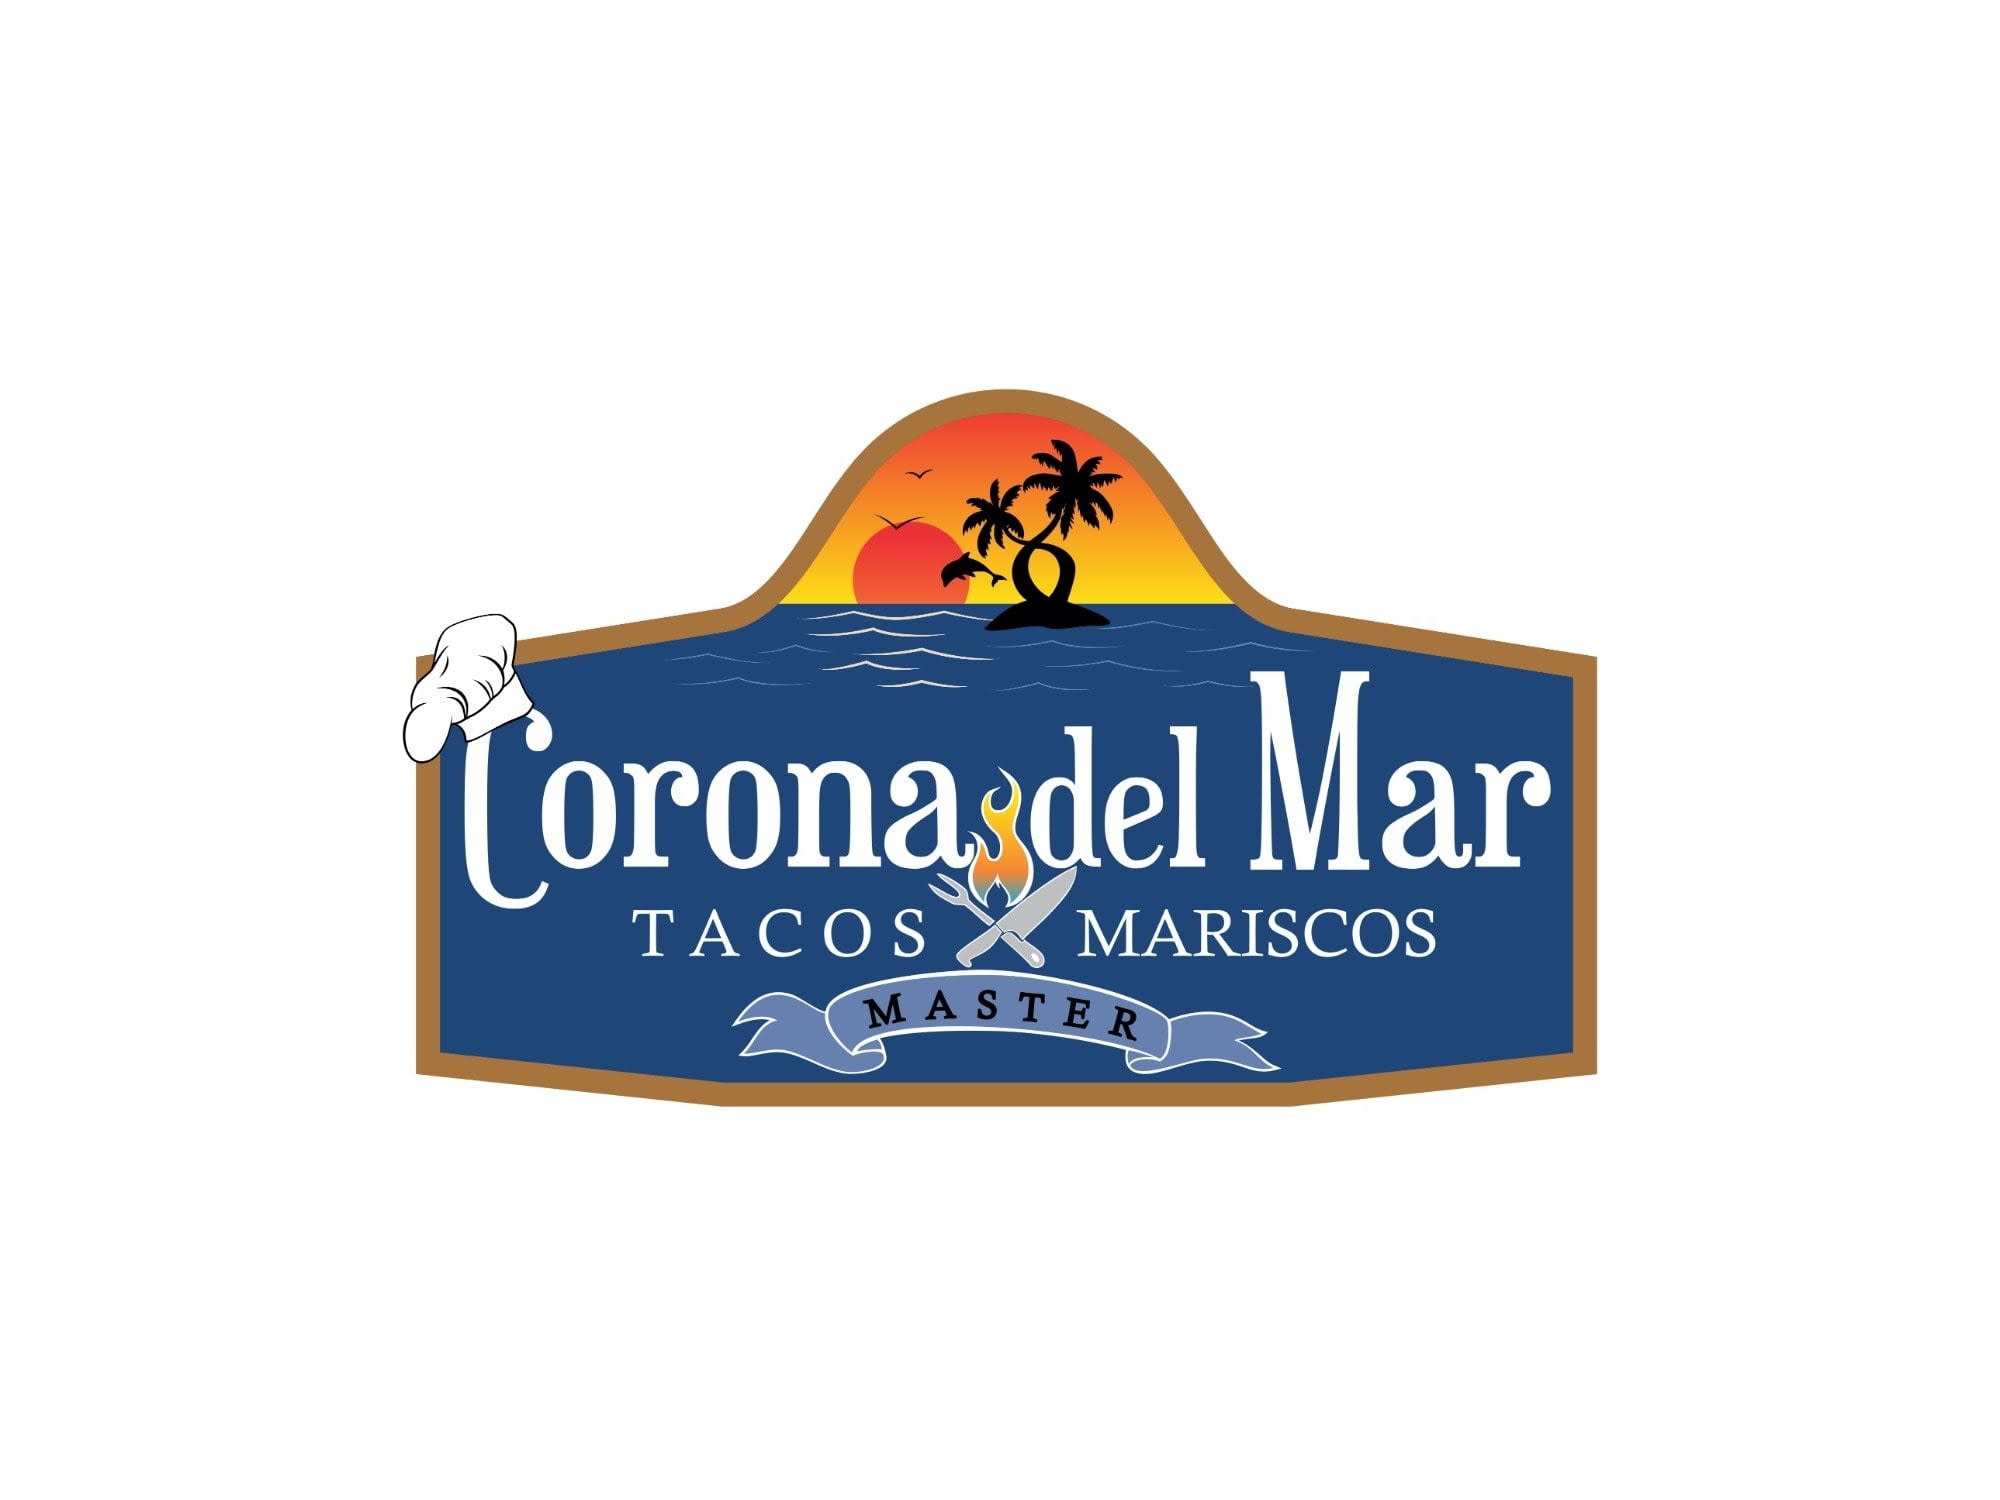 Corona del Mar Tacos y Mariscos